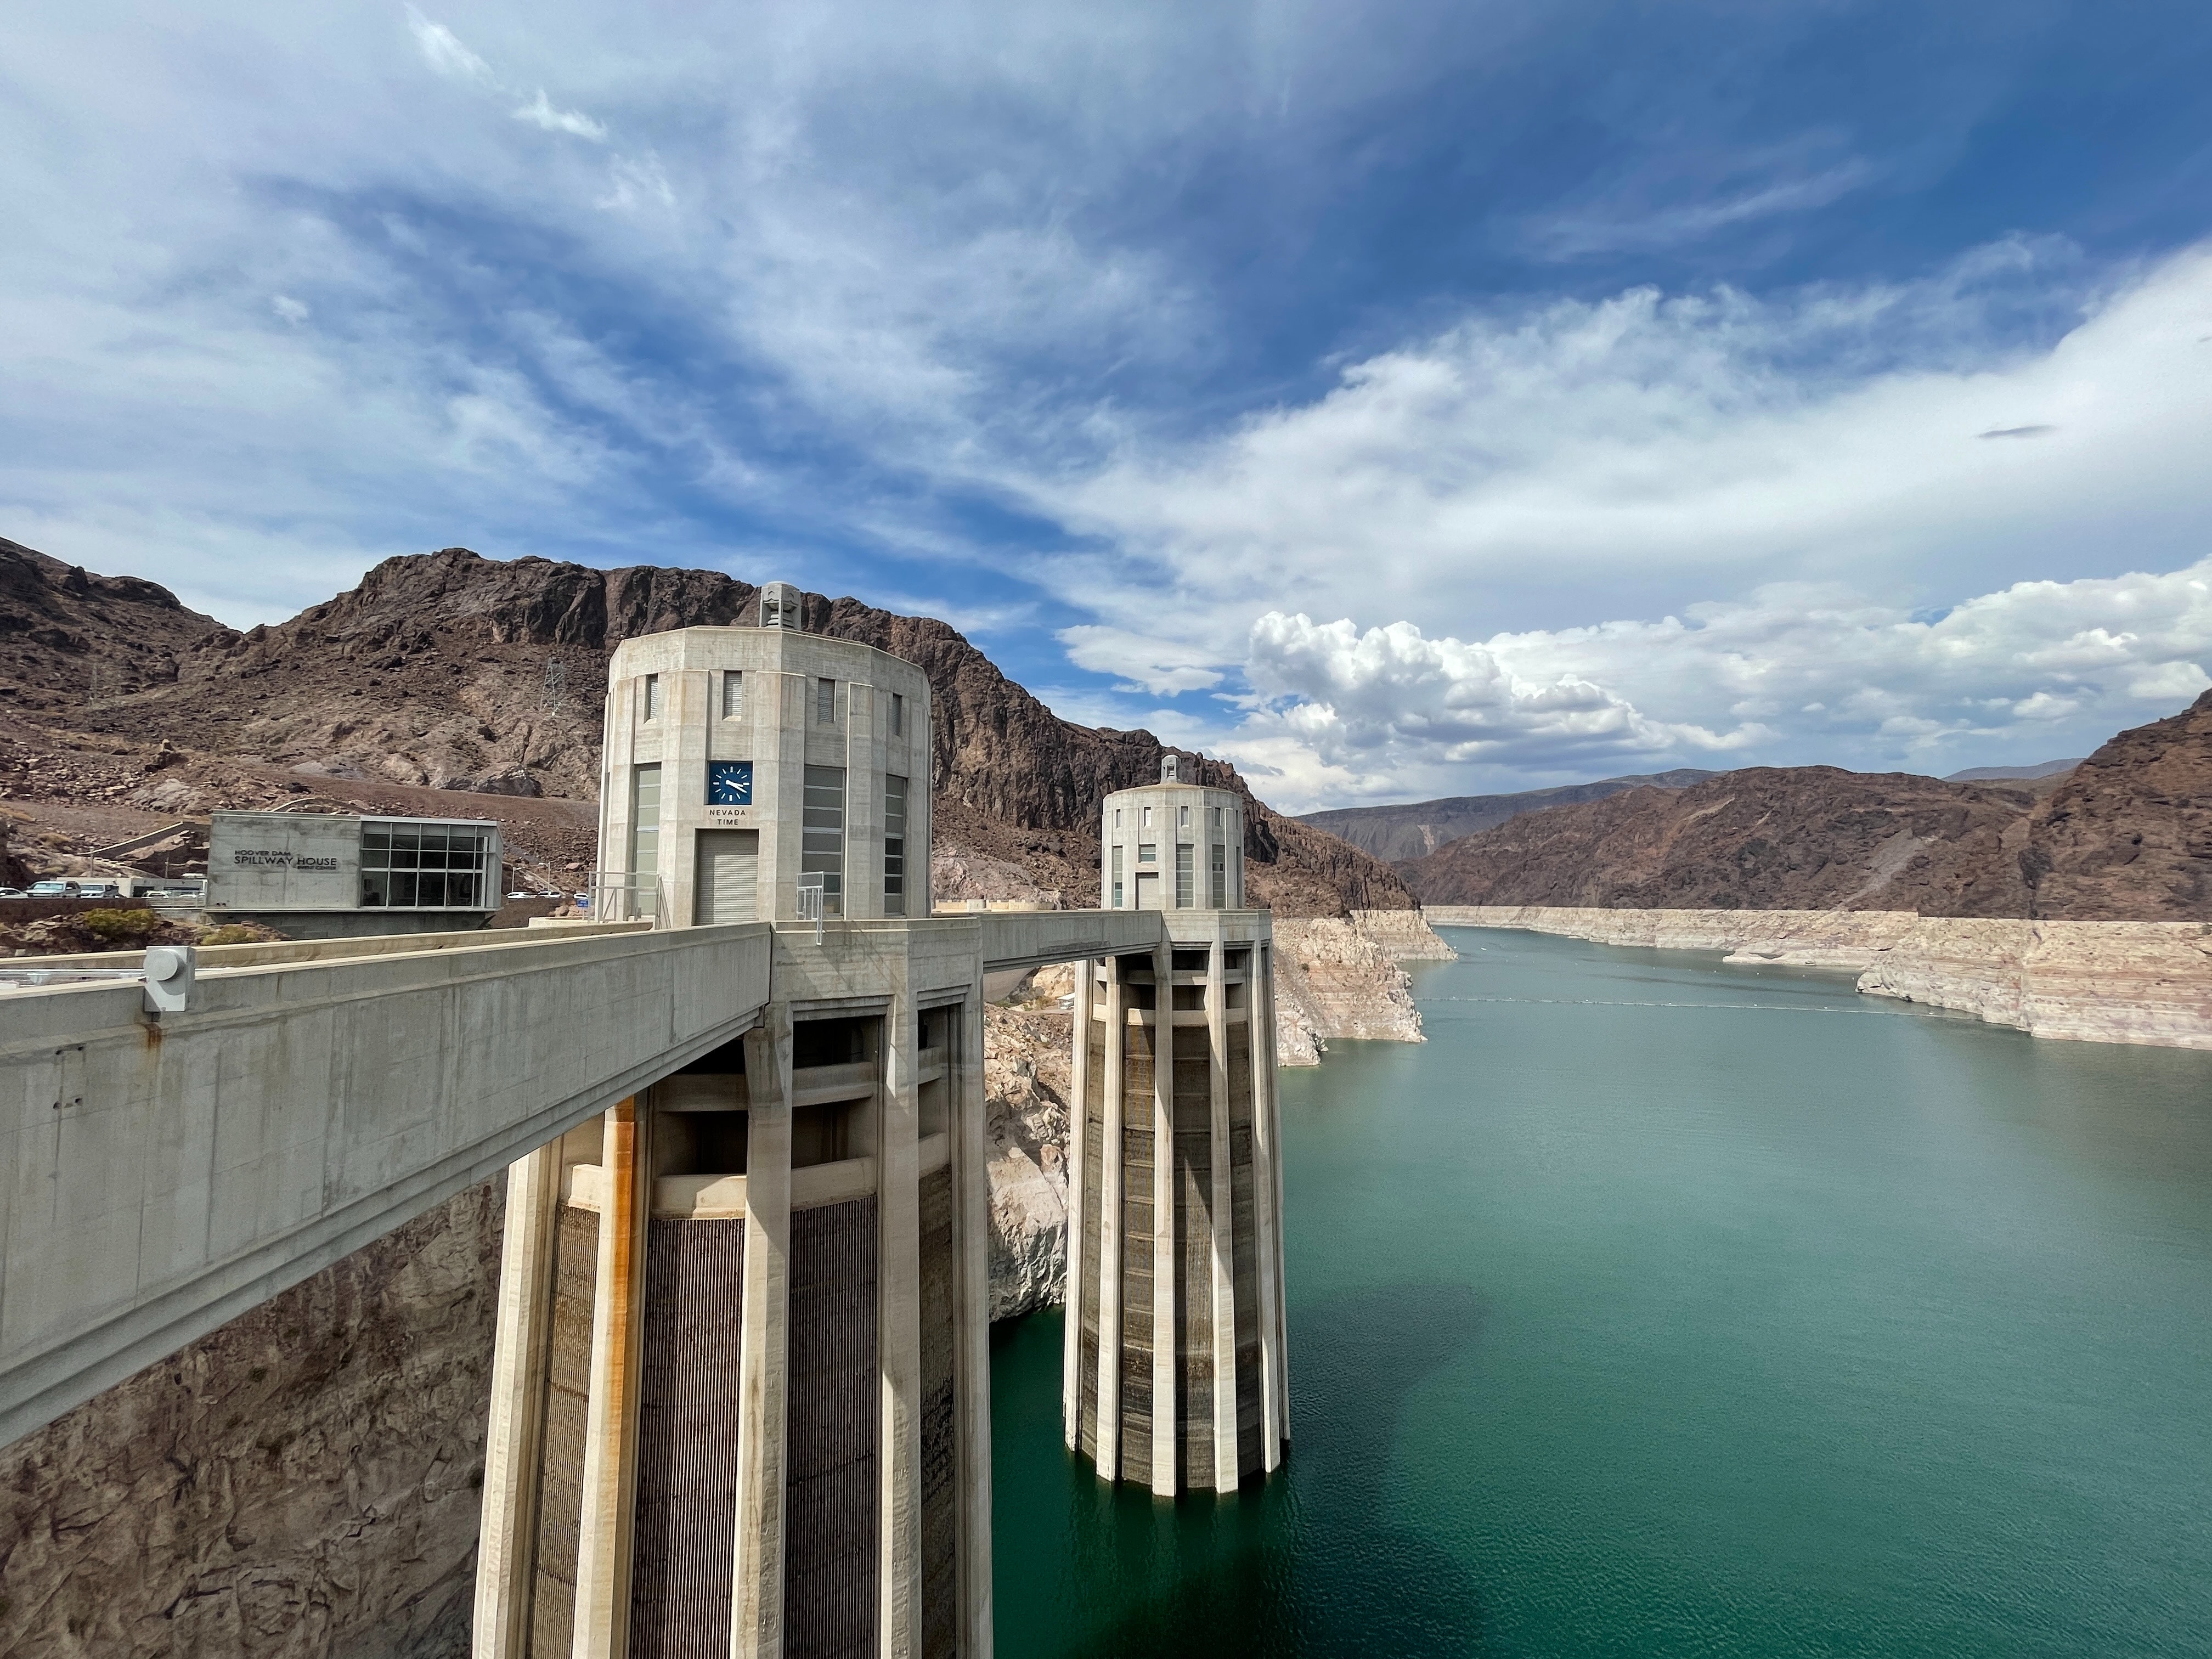 Best Hydropower Photo · 100% Free Downloads